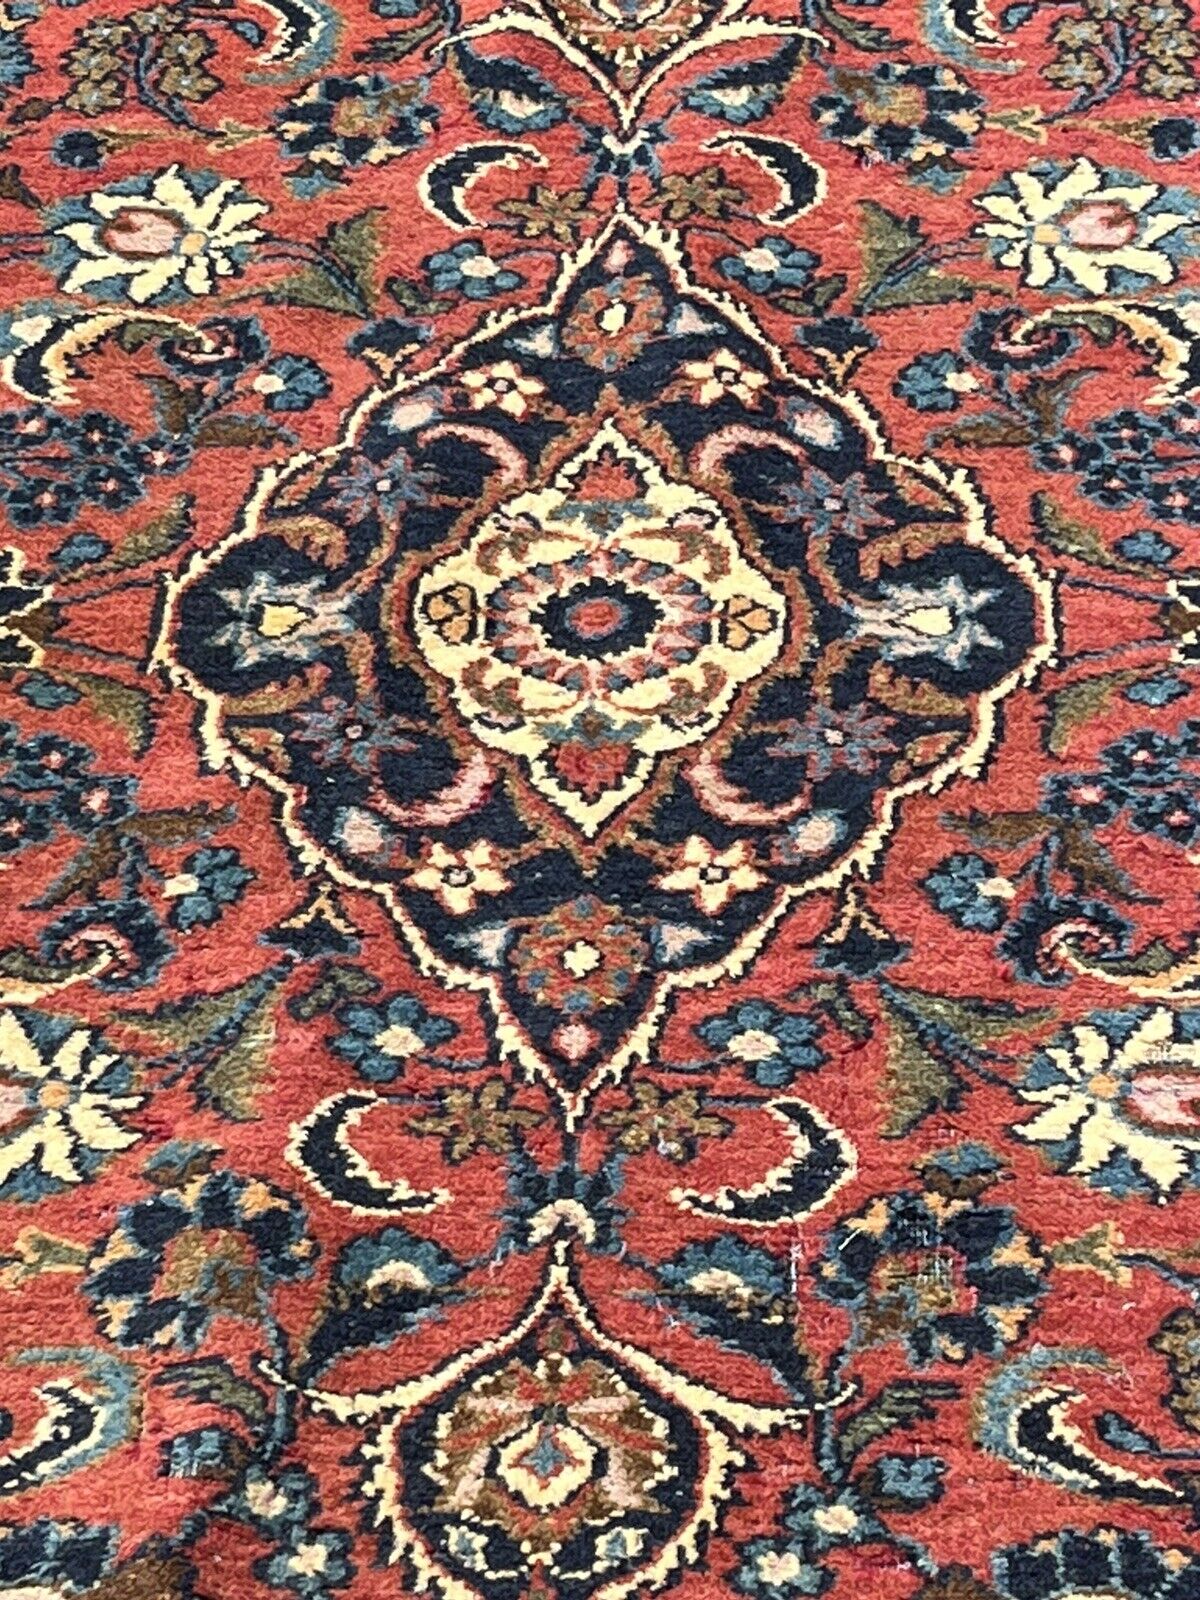 Rug, Carpet 218 X 137 Cms